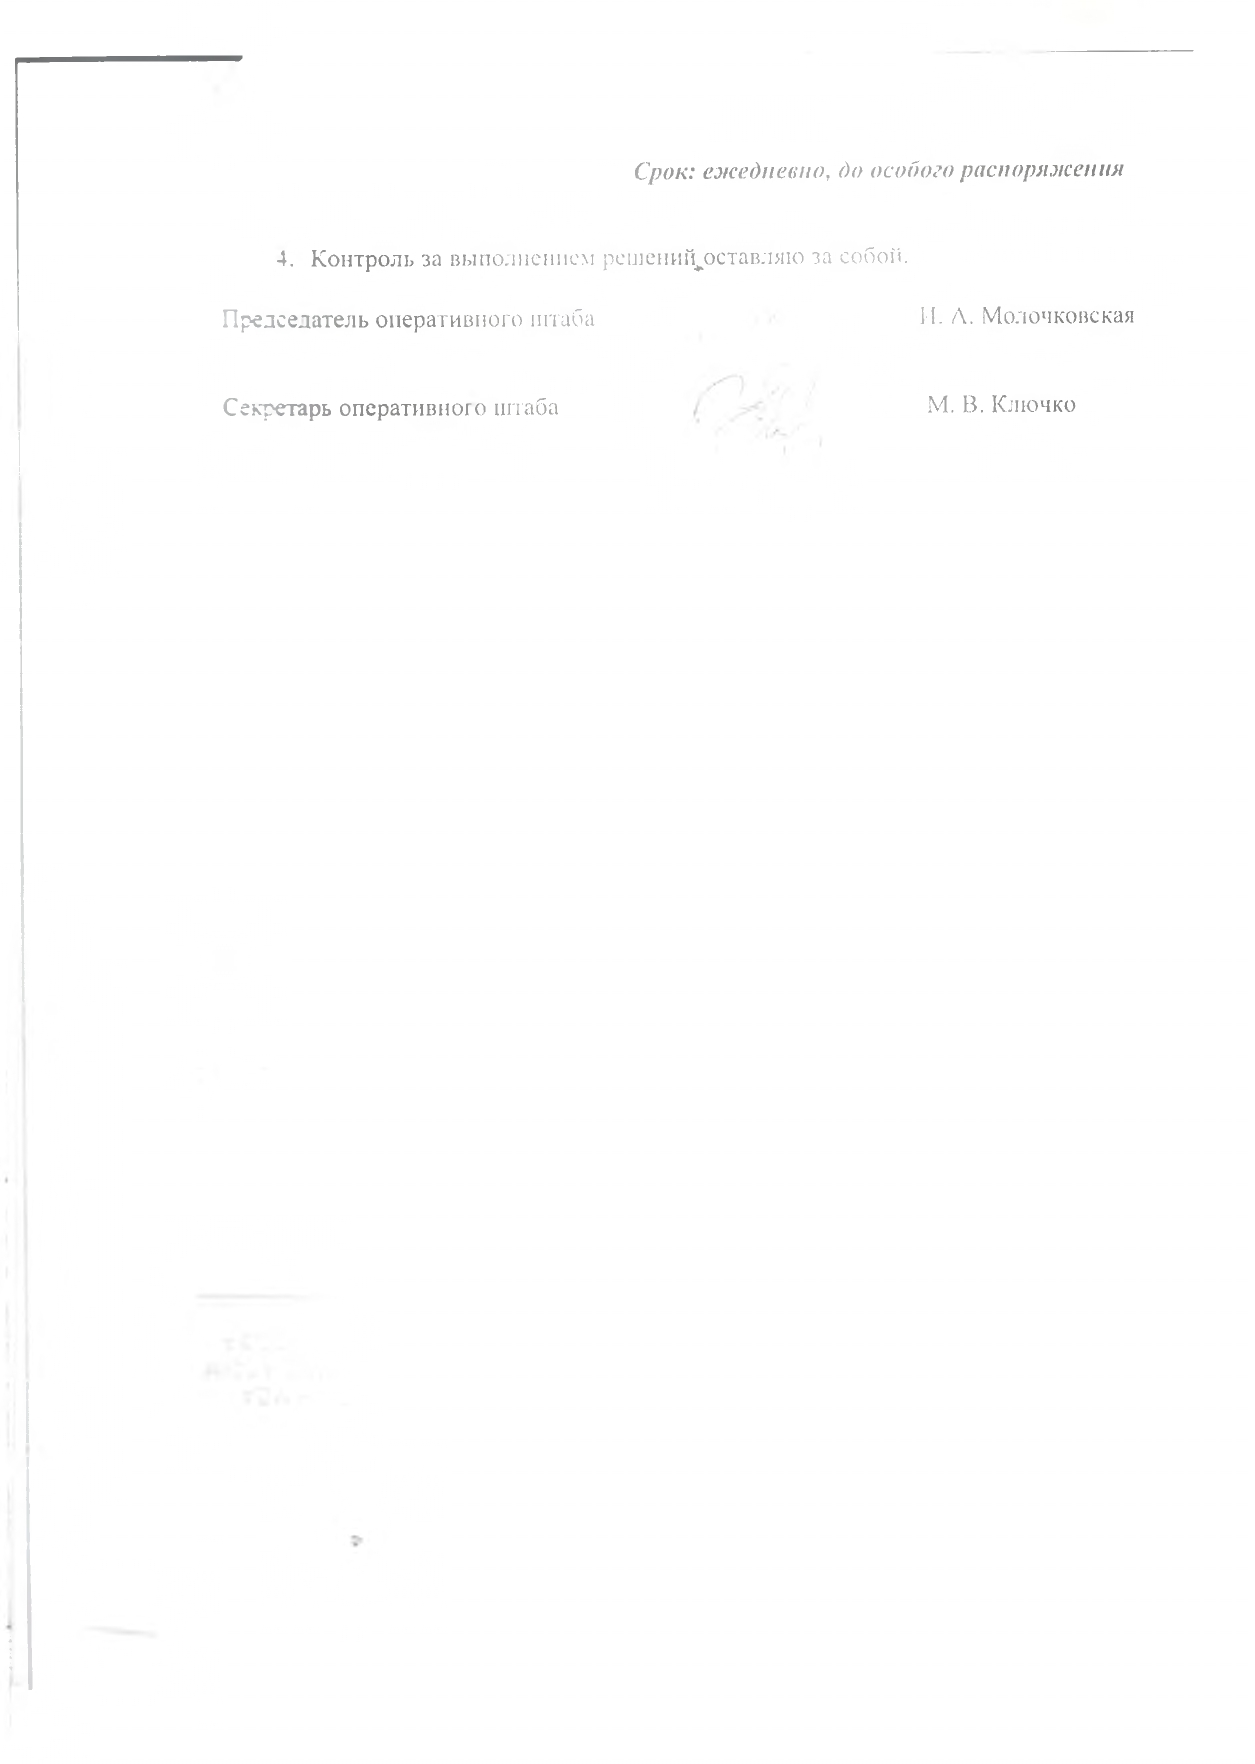 нормативные документы коронавирус page 0005